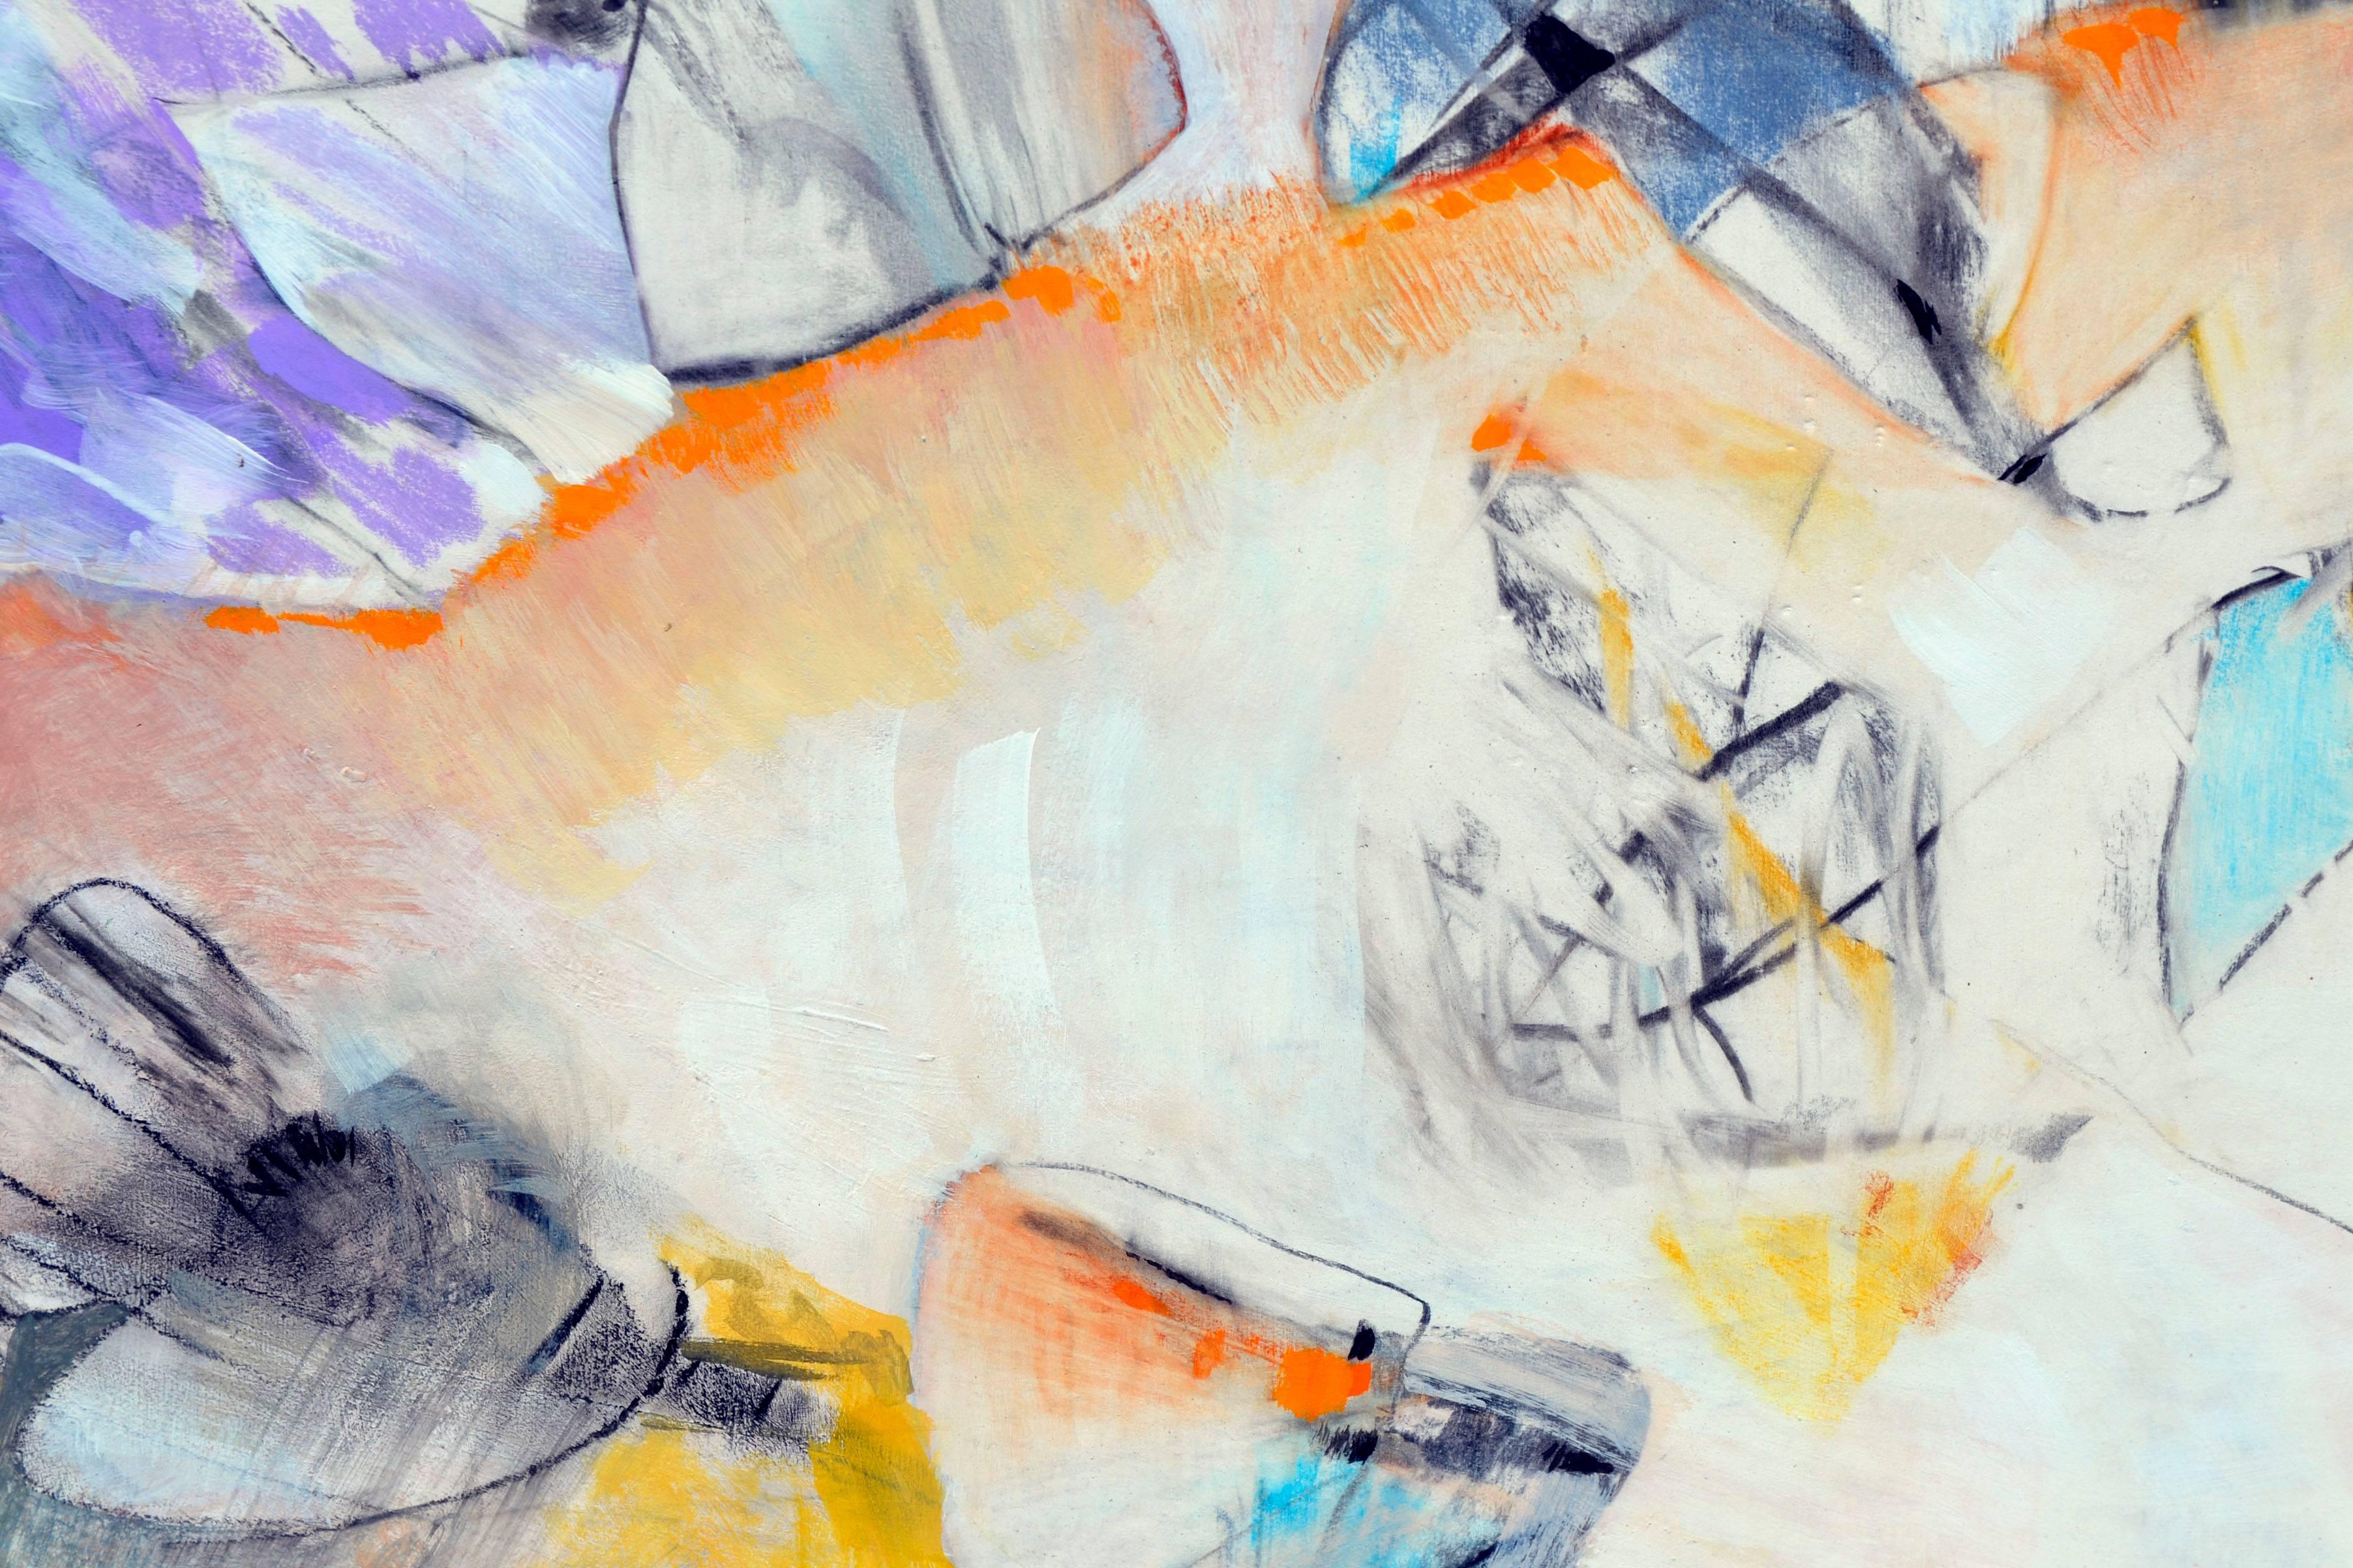 Reflektionen Abstrakt - Zweiseitiges abstraktes expressionistisches Gemälde auf Papier
Brillantes abstraktes expressionistisches Werk von Jack Madson (Amerikaner, geb. 1927). Ein Künstler aus Felton, Kalifornien. Madson studierte an der Layton